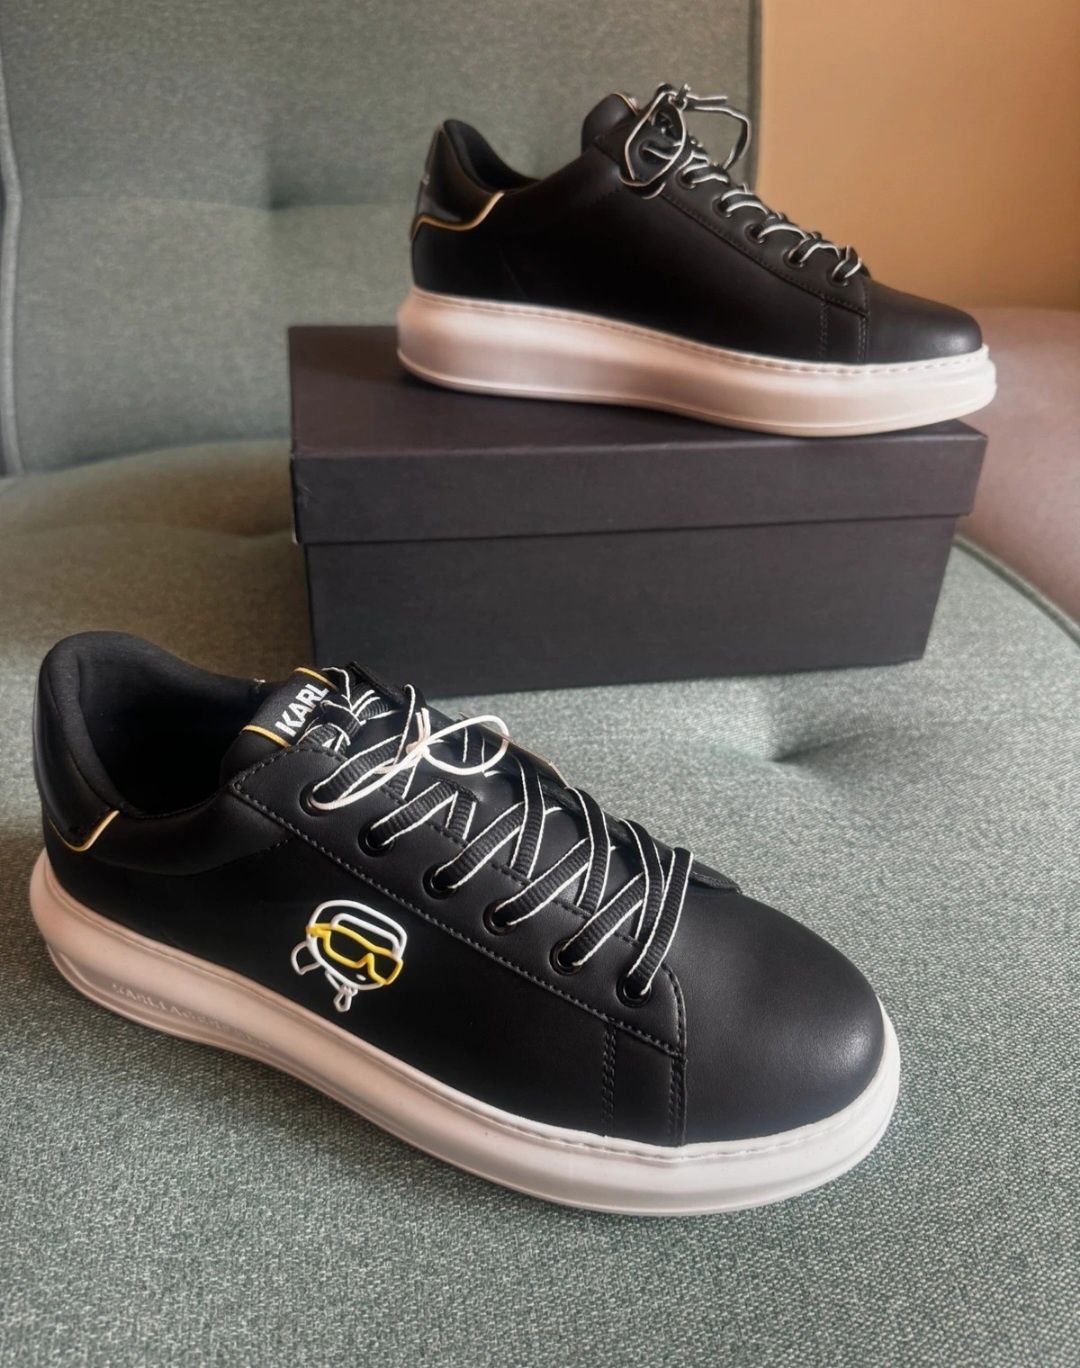 KARL Lagerfeld CAPRI nowe buty męskie R44 czarne sneakersy Tommy Boss